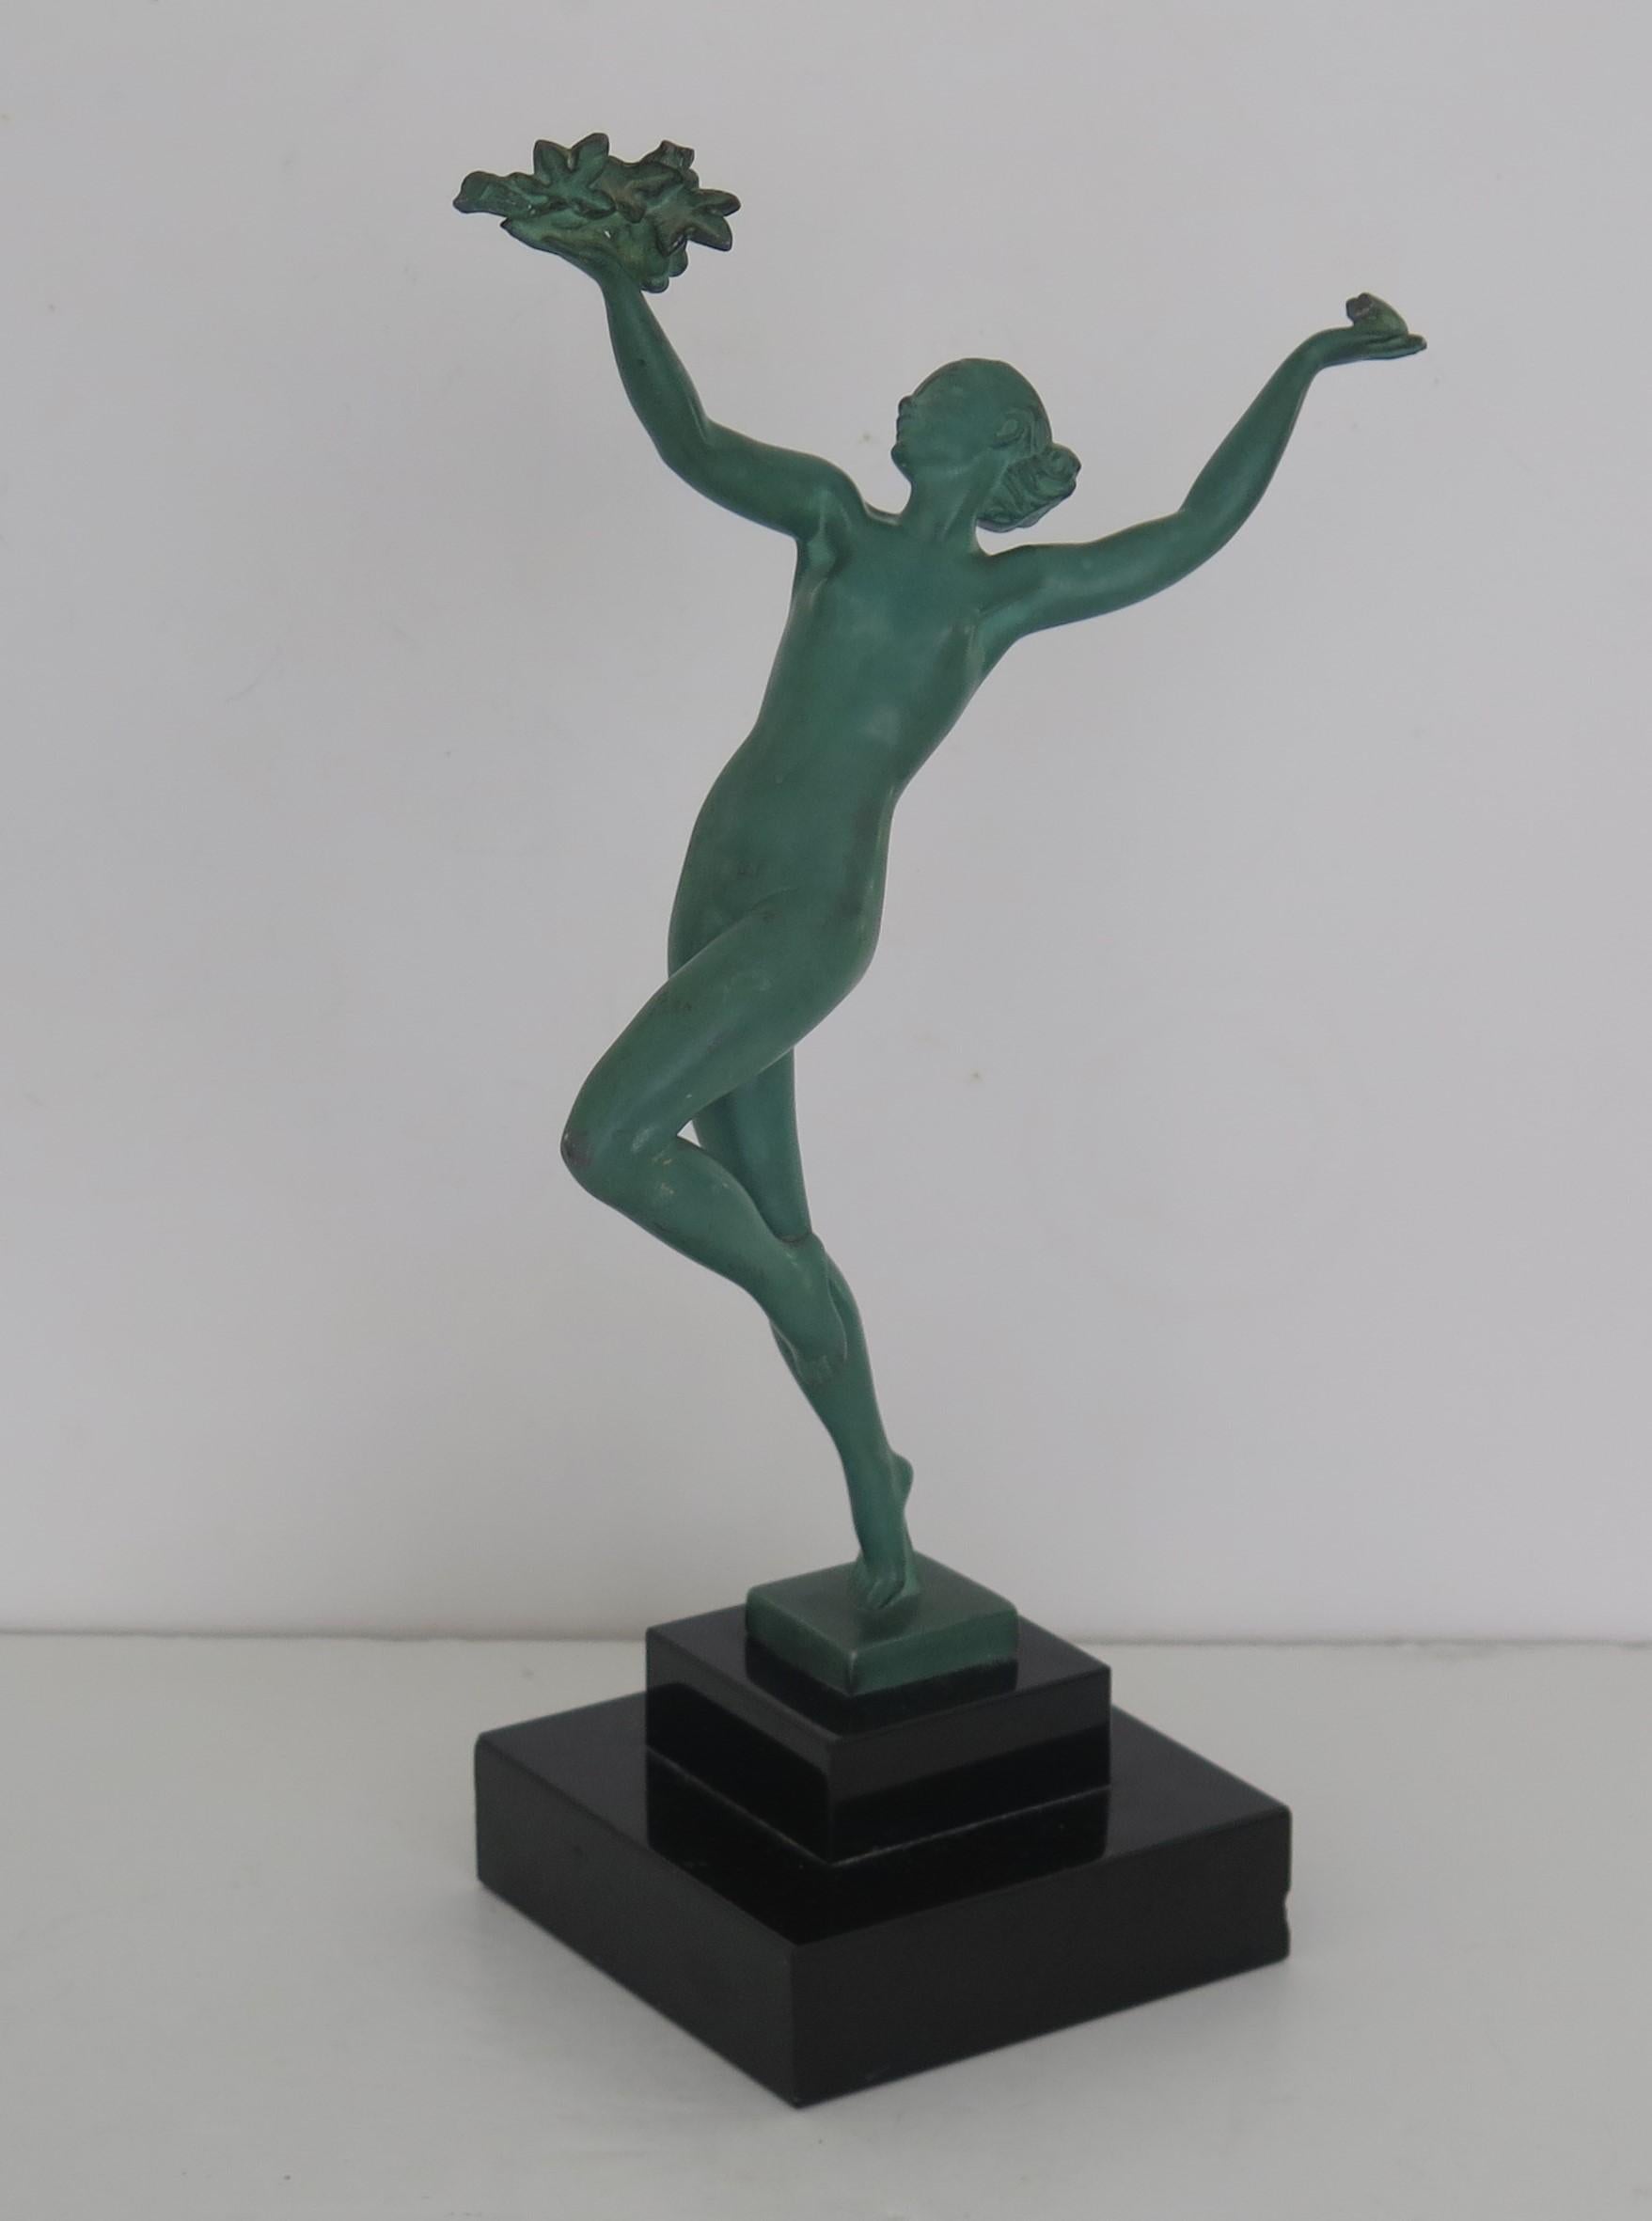 Dies ist eine originale Metallfigur einer Tänzerin von Max Le Verrier / Pierre Le Faguays, genannt GRISERIE, und signiert GUERBE, hergestellt in Frankreich in der Art Deco Periode, um 1930 .

Die Figur wurde von Pierre le Faguays in Zusammenarbeit